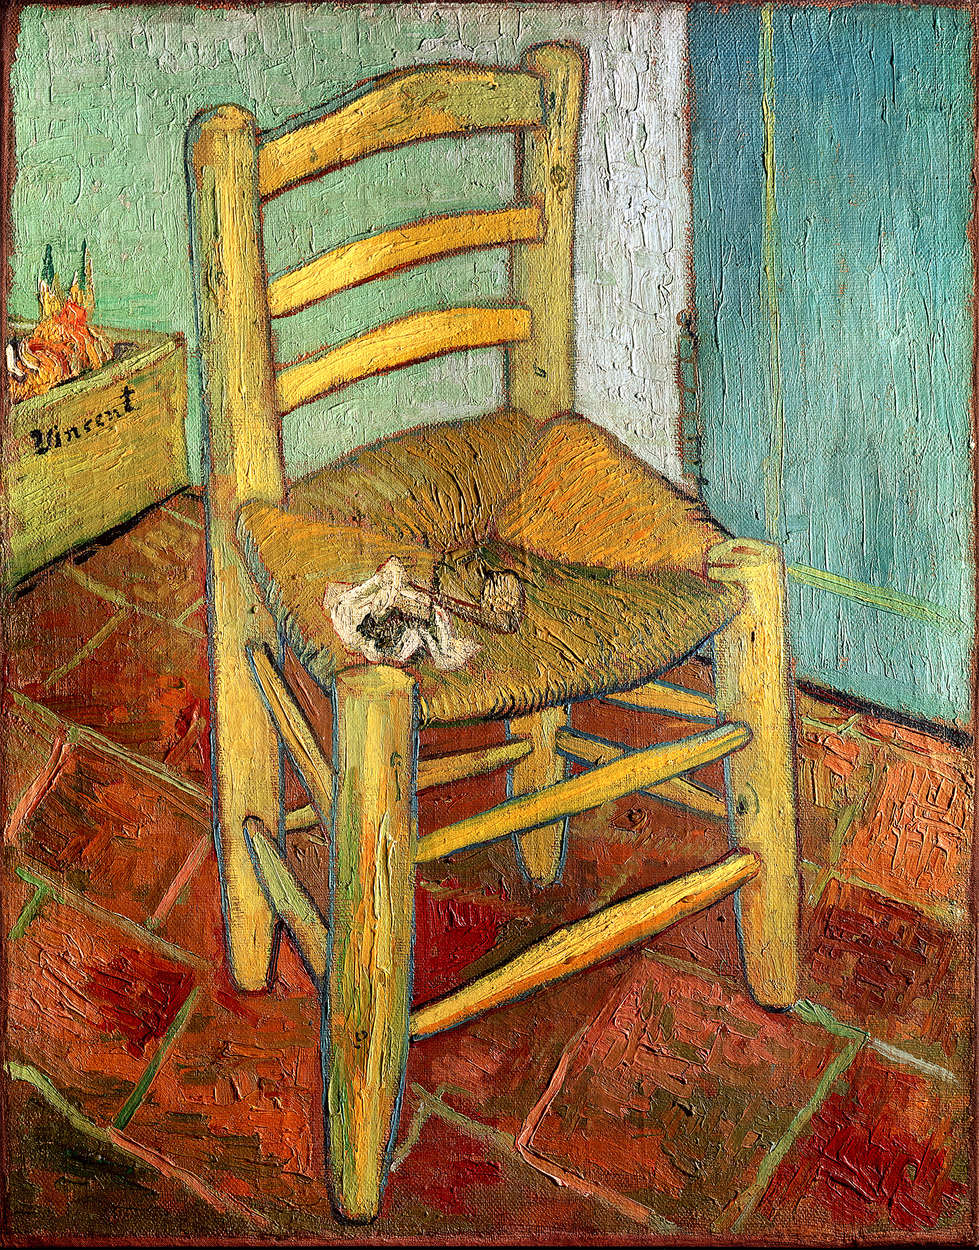             Mural de Vincent van Gogh "La silla de Vincent"
        